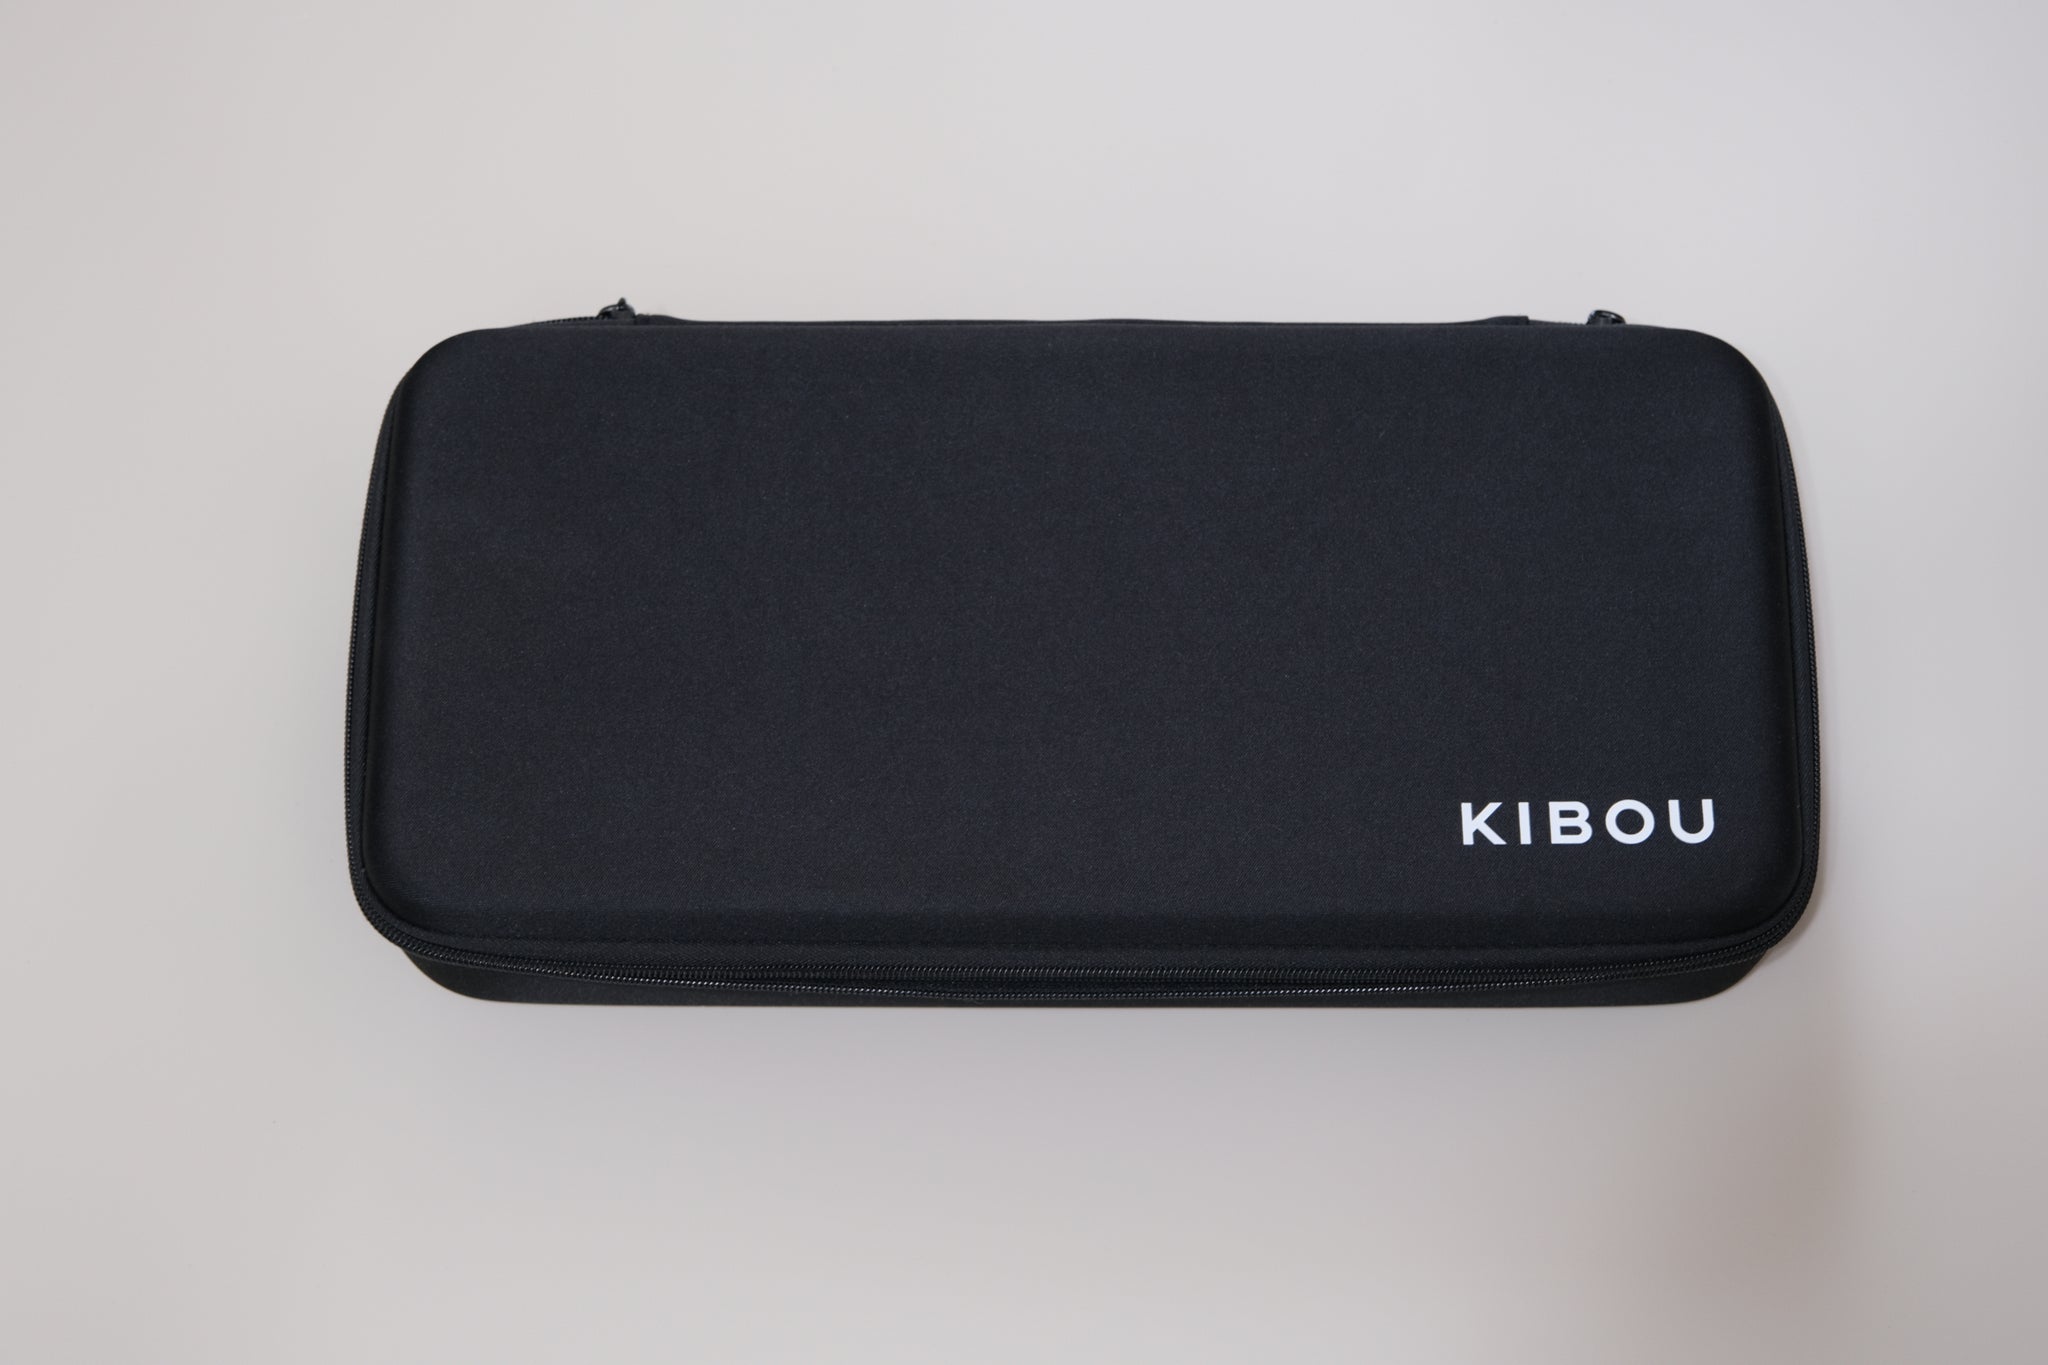 Kibou Keyboard Case